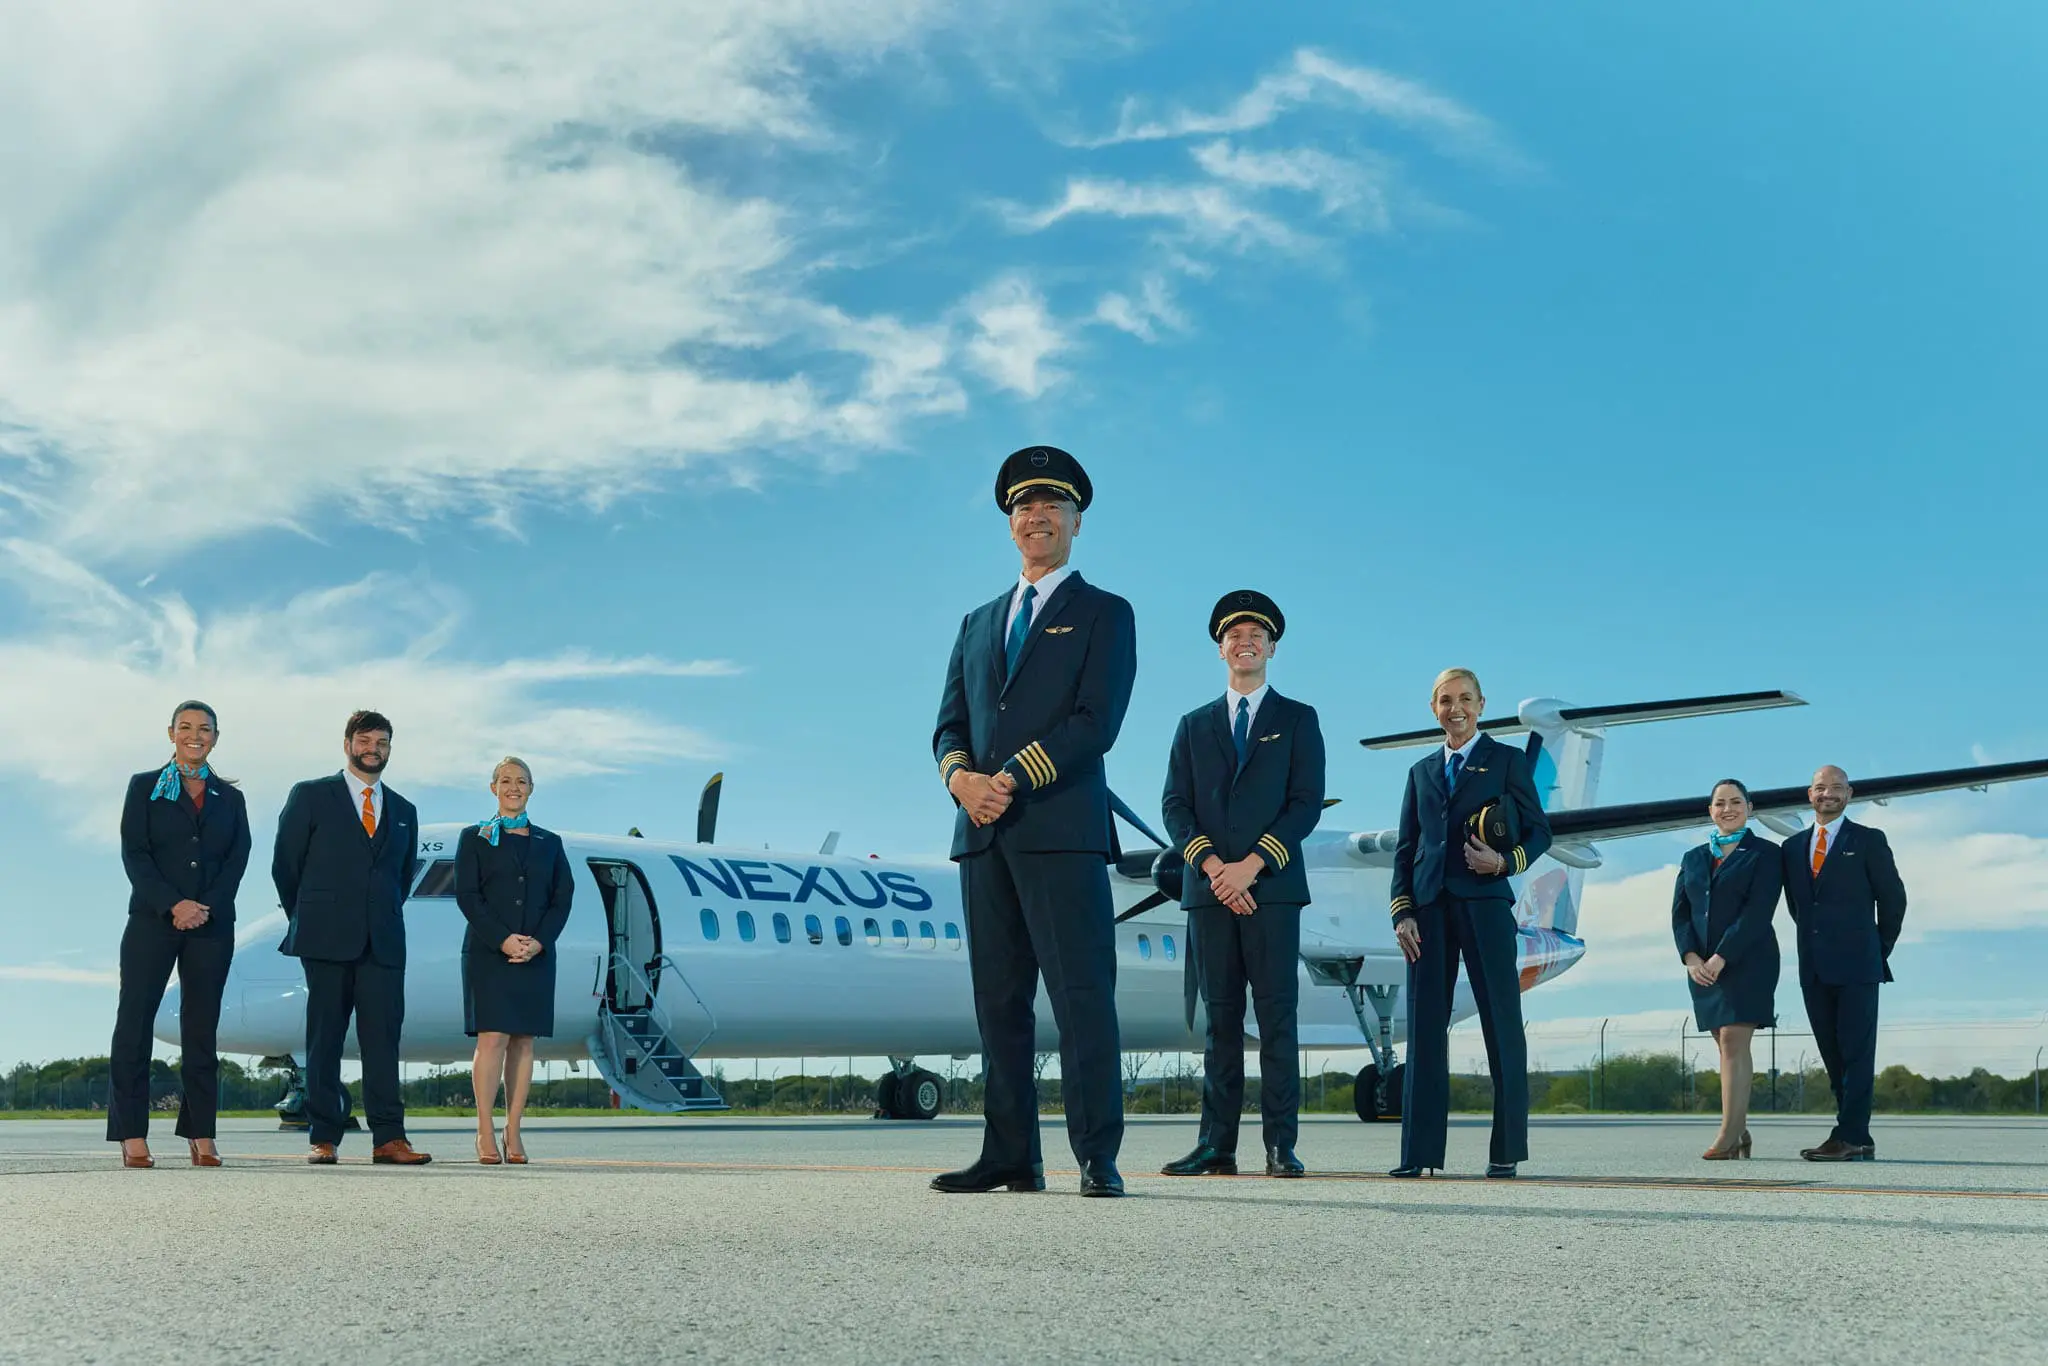 Nexus airlines crew standing in front of a Nexus plane